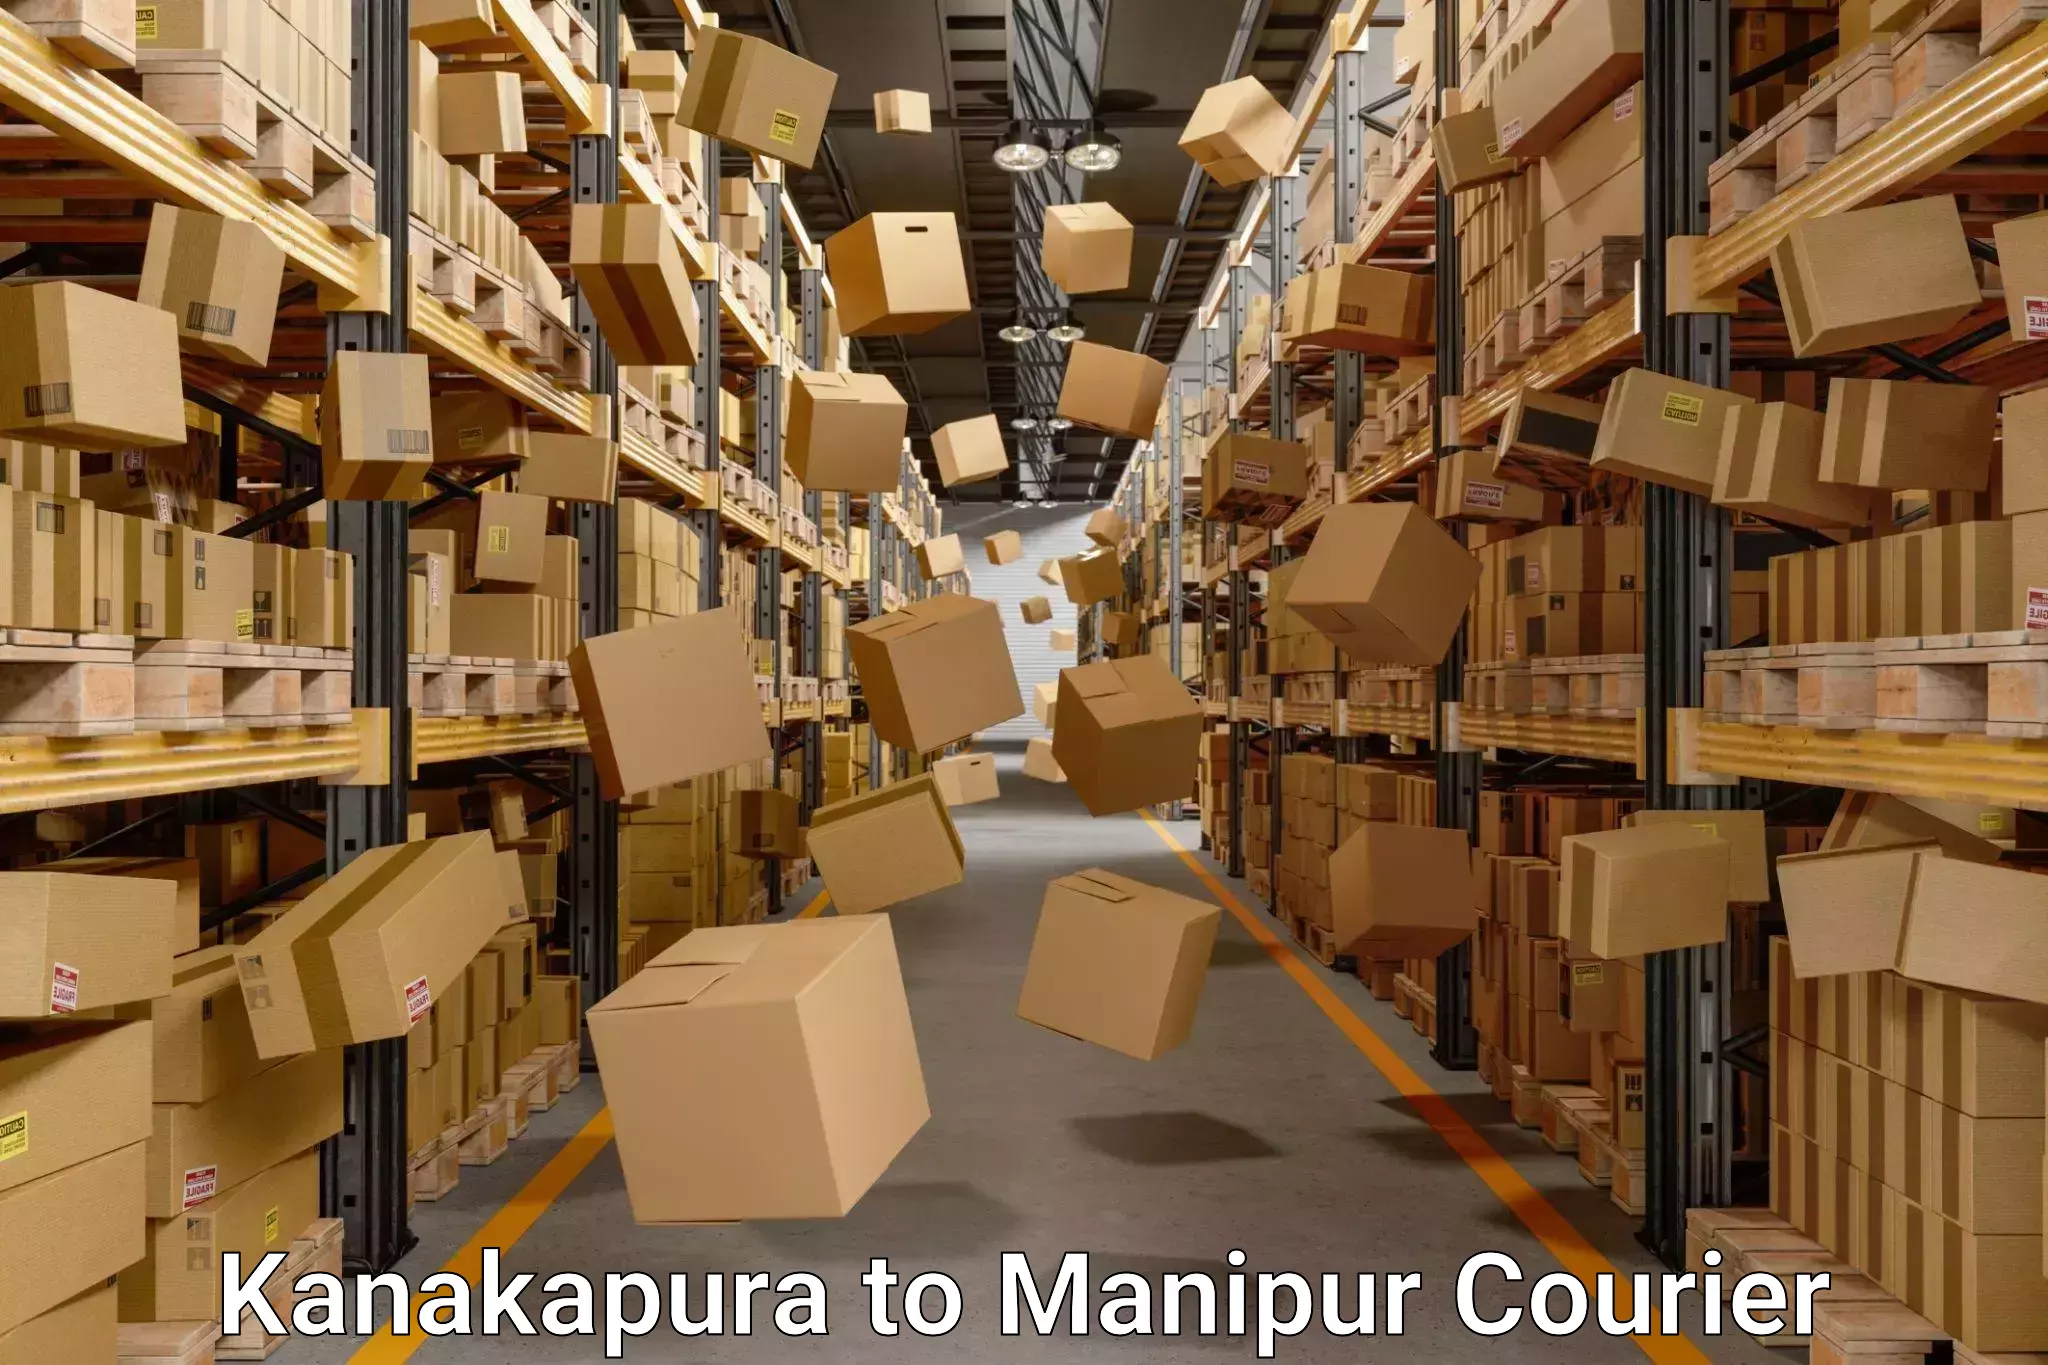 Professional moving company Kanakapura to Manipur